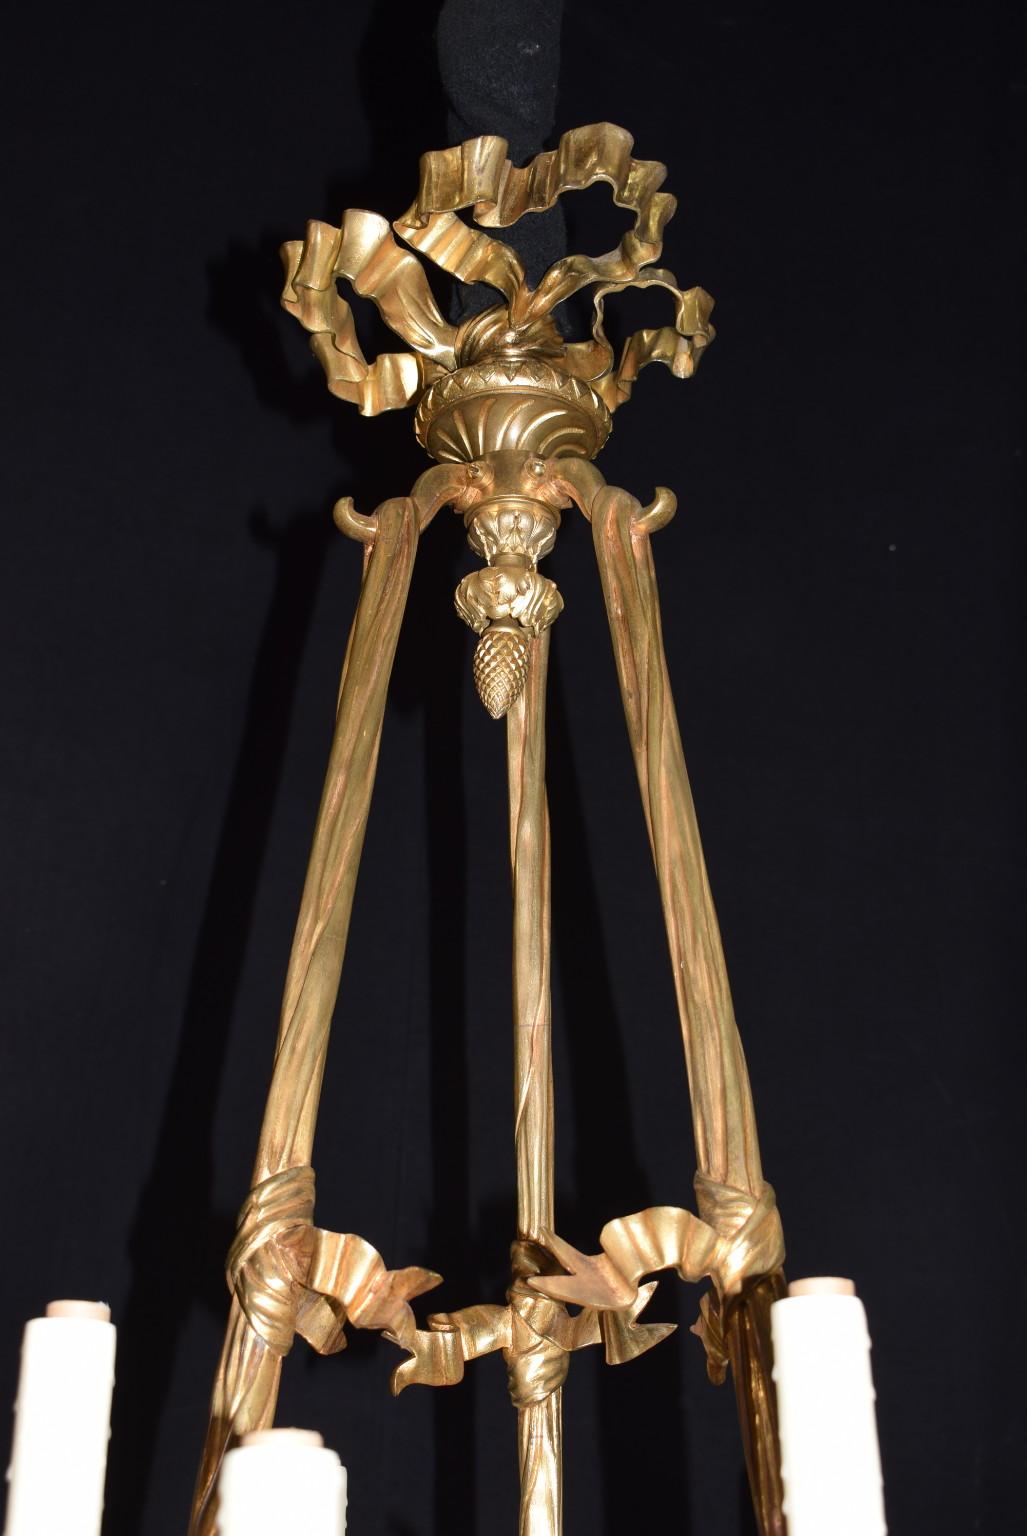 Lustre de style Louis XVI en bronze doré et patiné, détails très fins.
CW4507